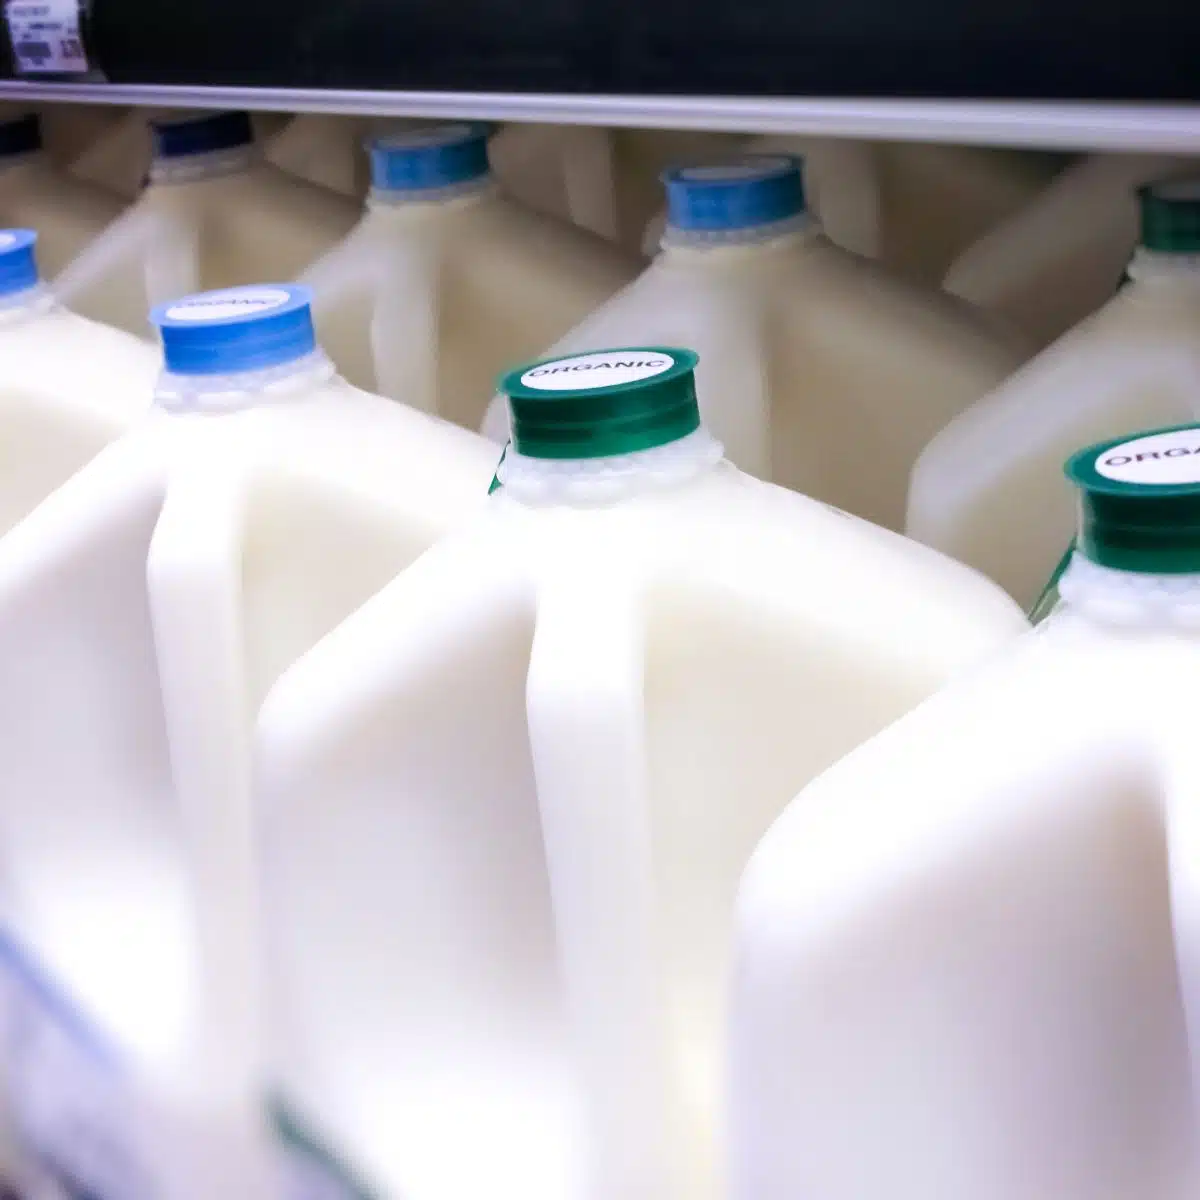 Imagen cuadrada que muestra galones de leche.